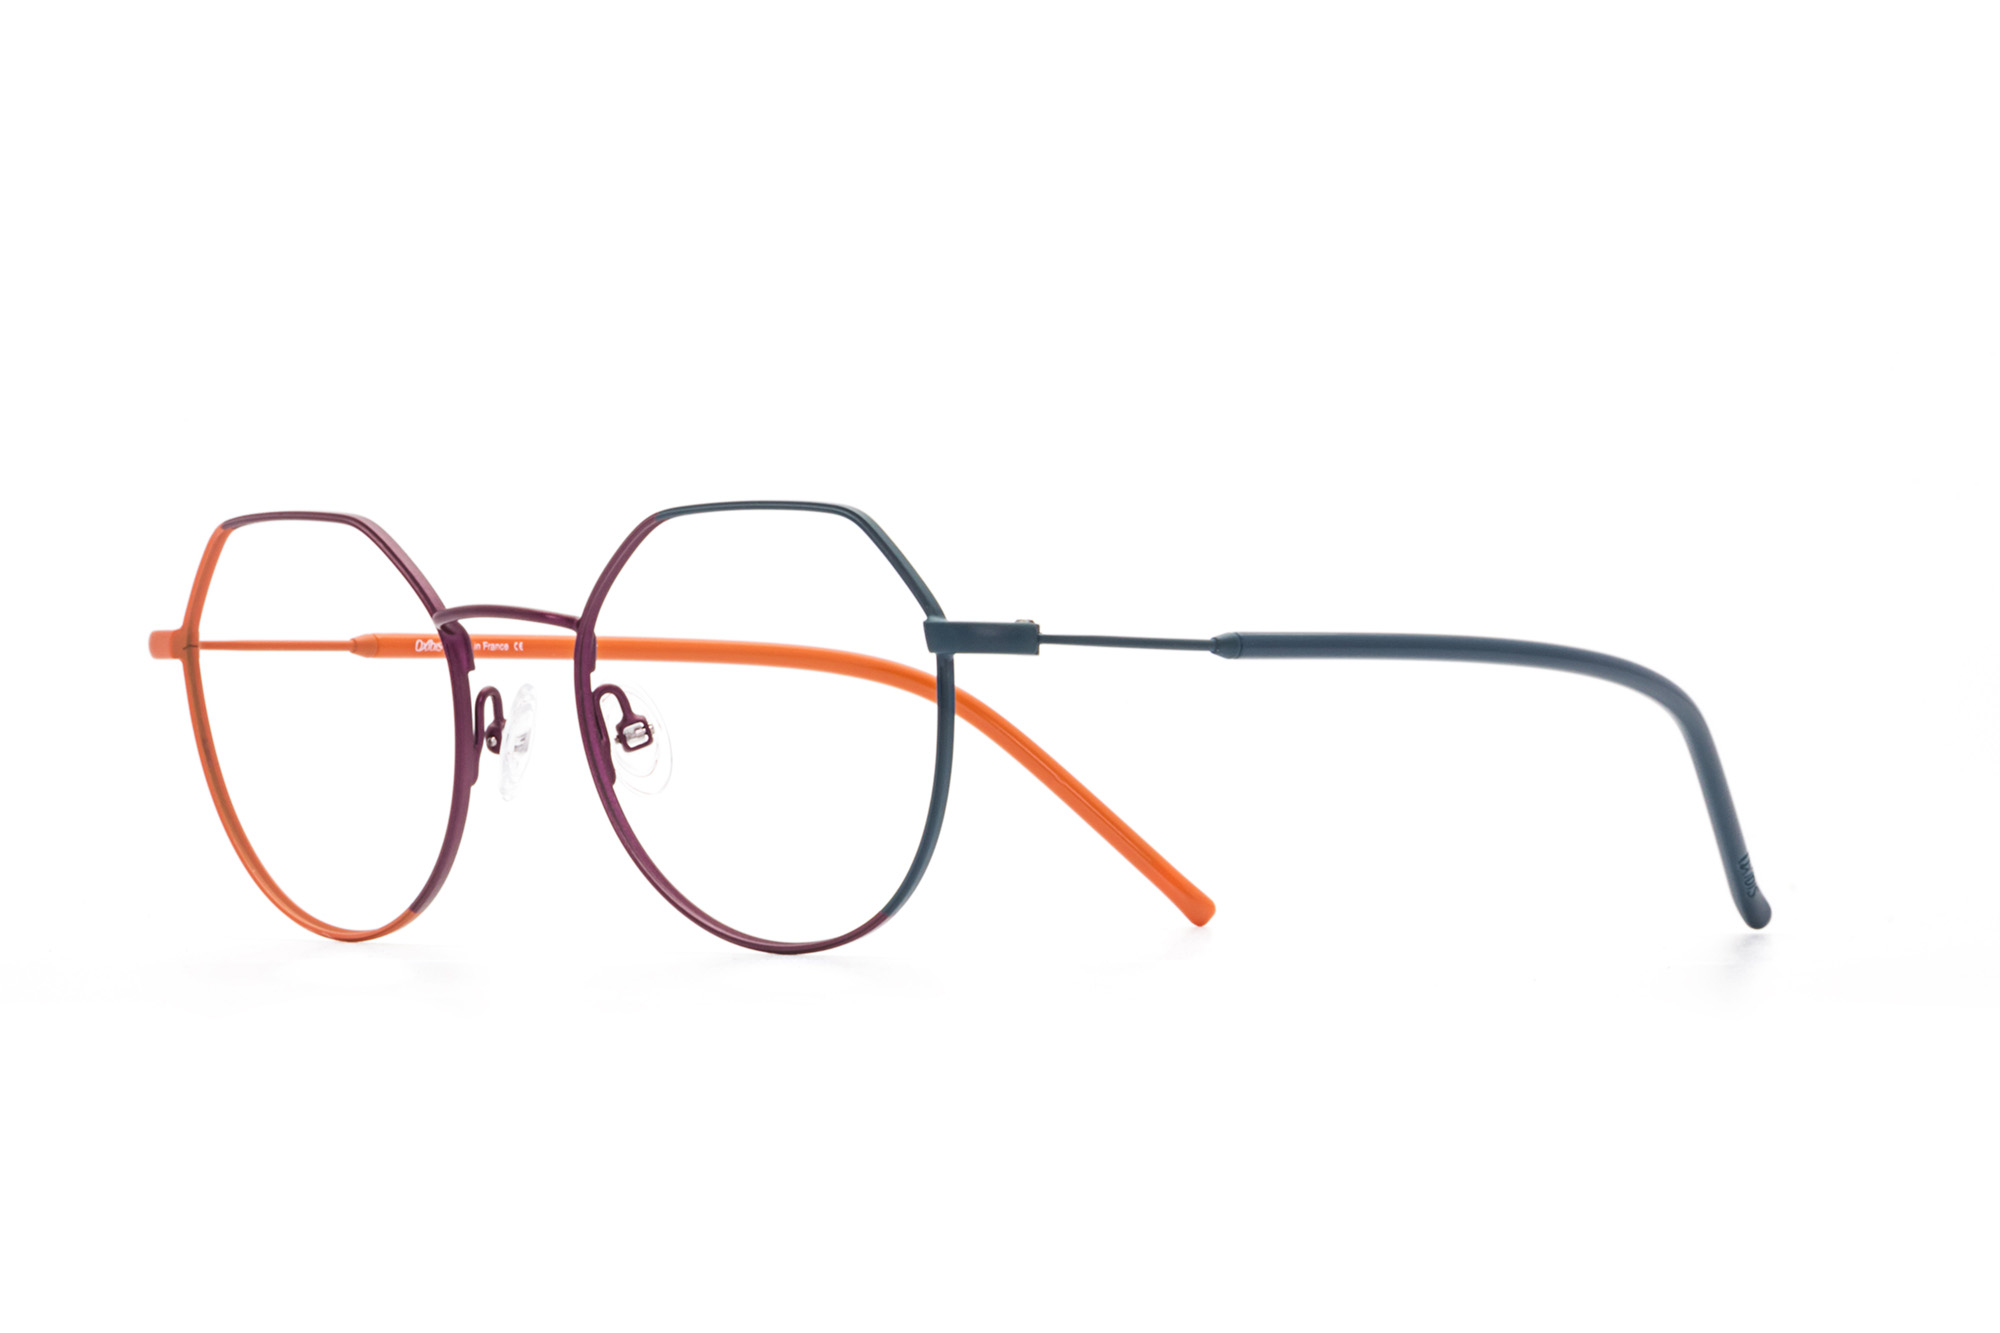 Kullanıma hazır optik tarzda işlenmiş camları ve optik uyumlu çerçevesiyle Oxibis Iggy IG2C7 49 küçük ekartman turuncu, bordo ve mavi-yeşil renkli altıgen ve yuvarlak model unisex gözlüğü optisyen veya gözlükçülerin sunacağı numarasız veya numaralı cam özelleştirmeleriyle size en yakın gözlükçüden satın alabilirsiniz.